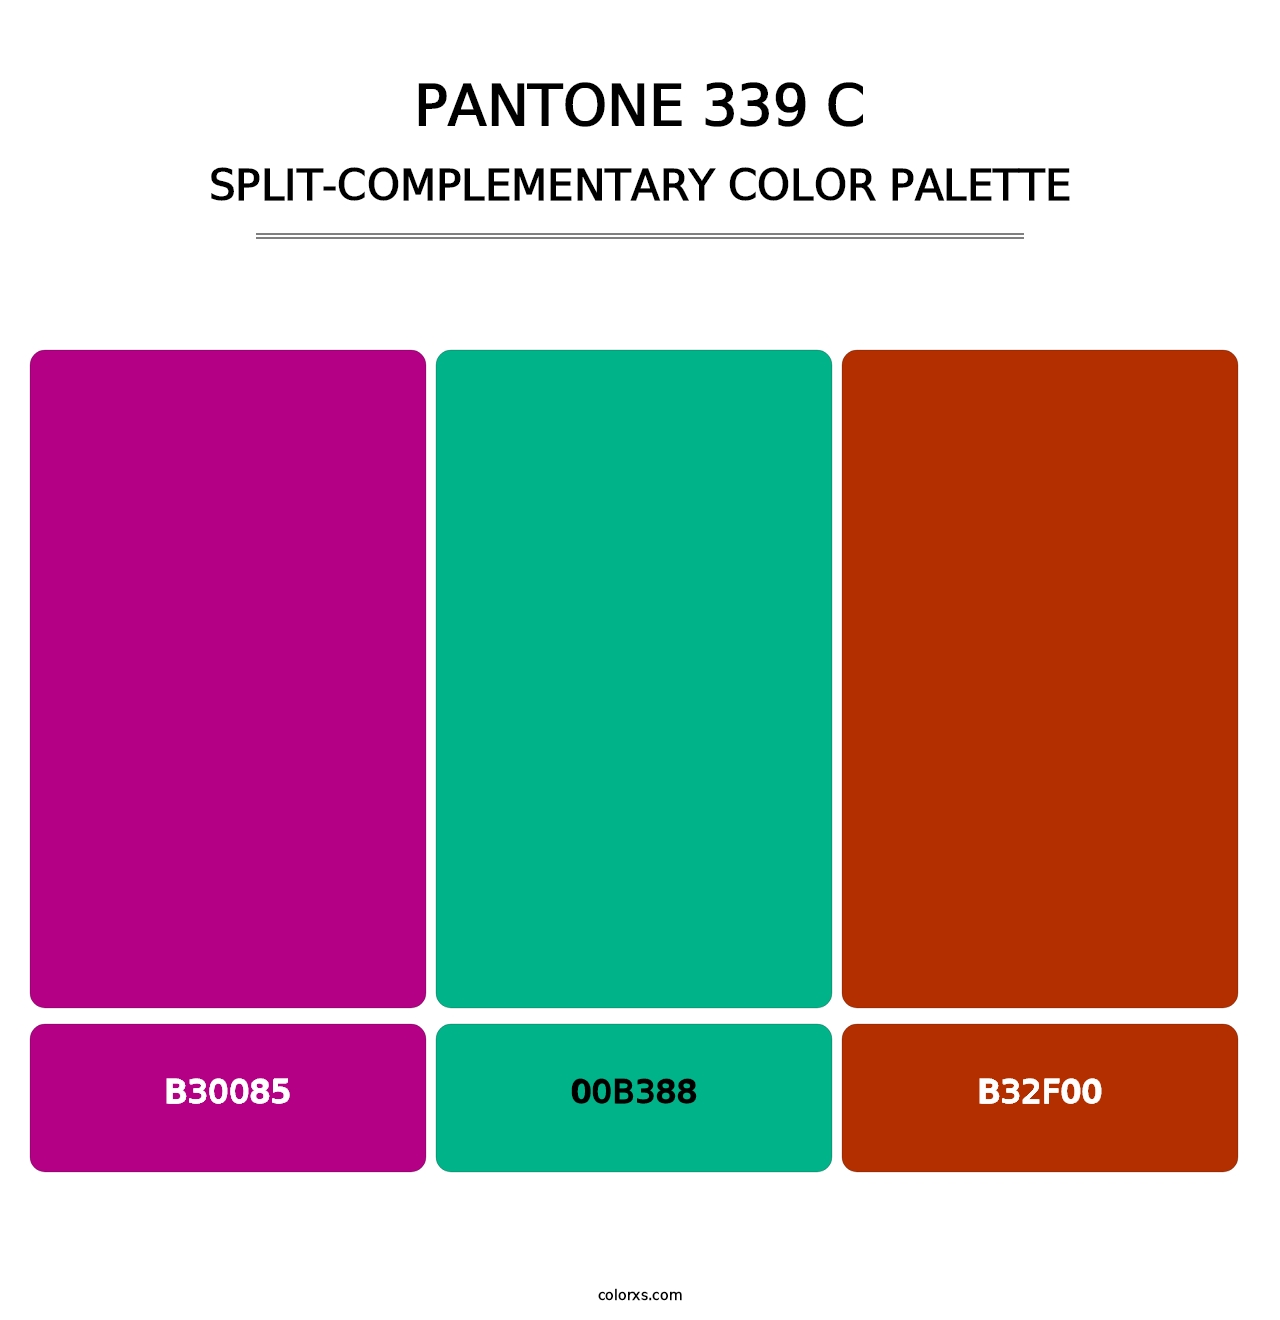 PANTONE 339 C - Split-Complementary Color Palette